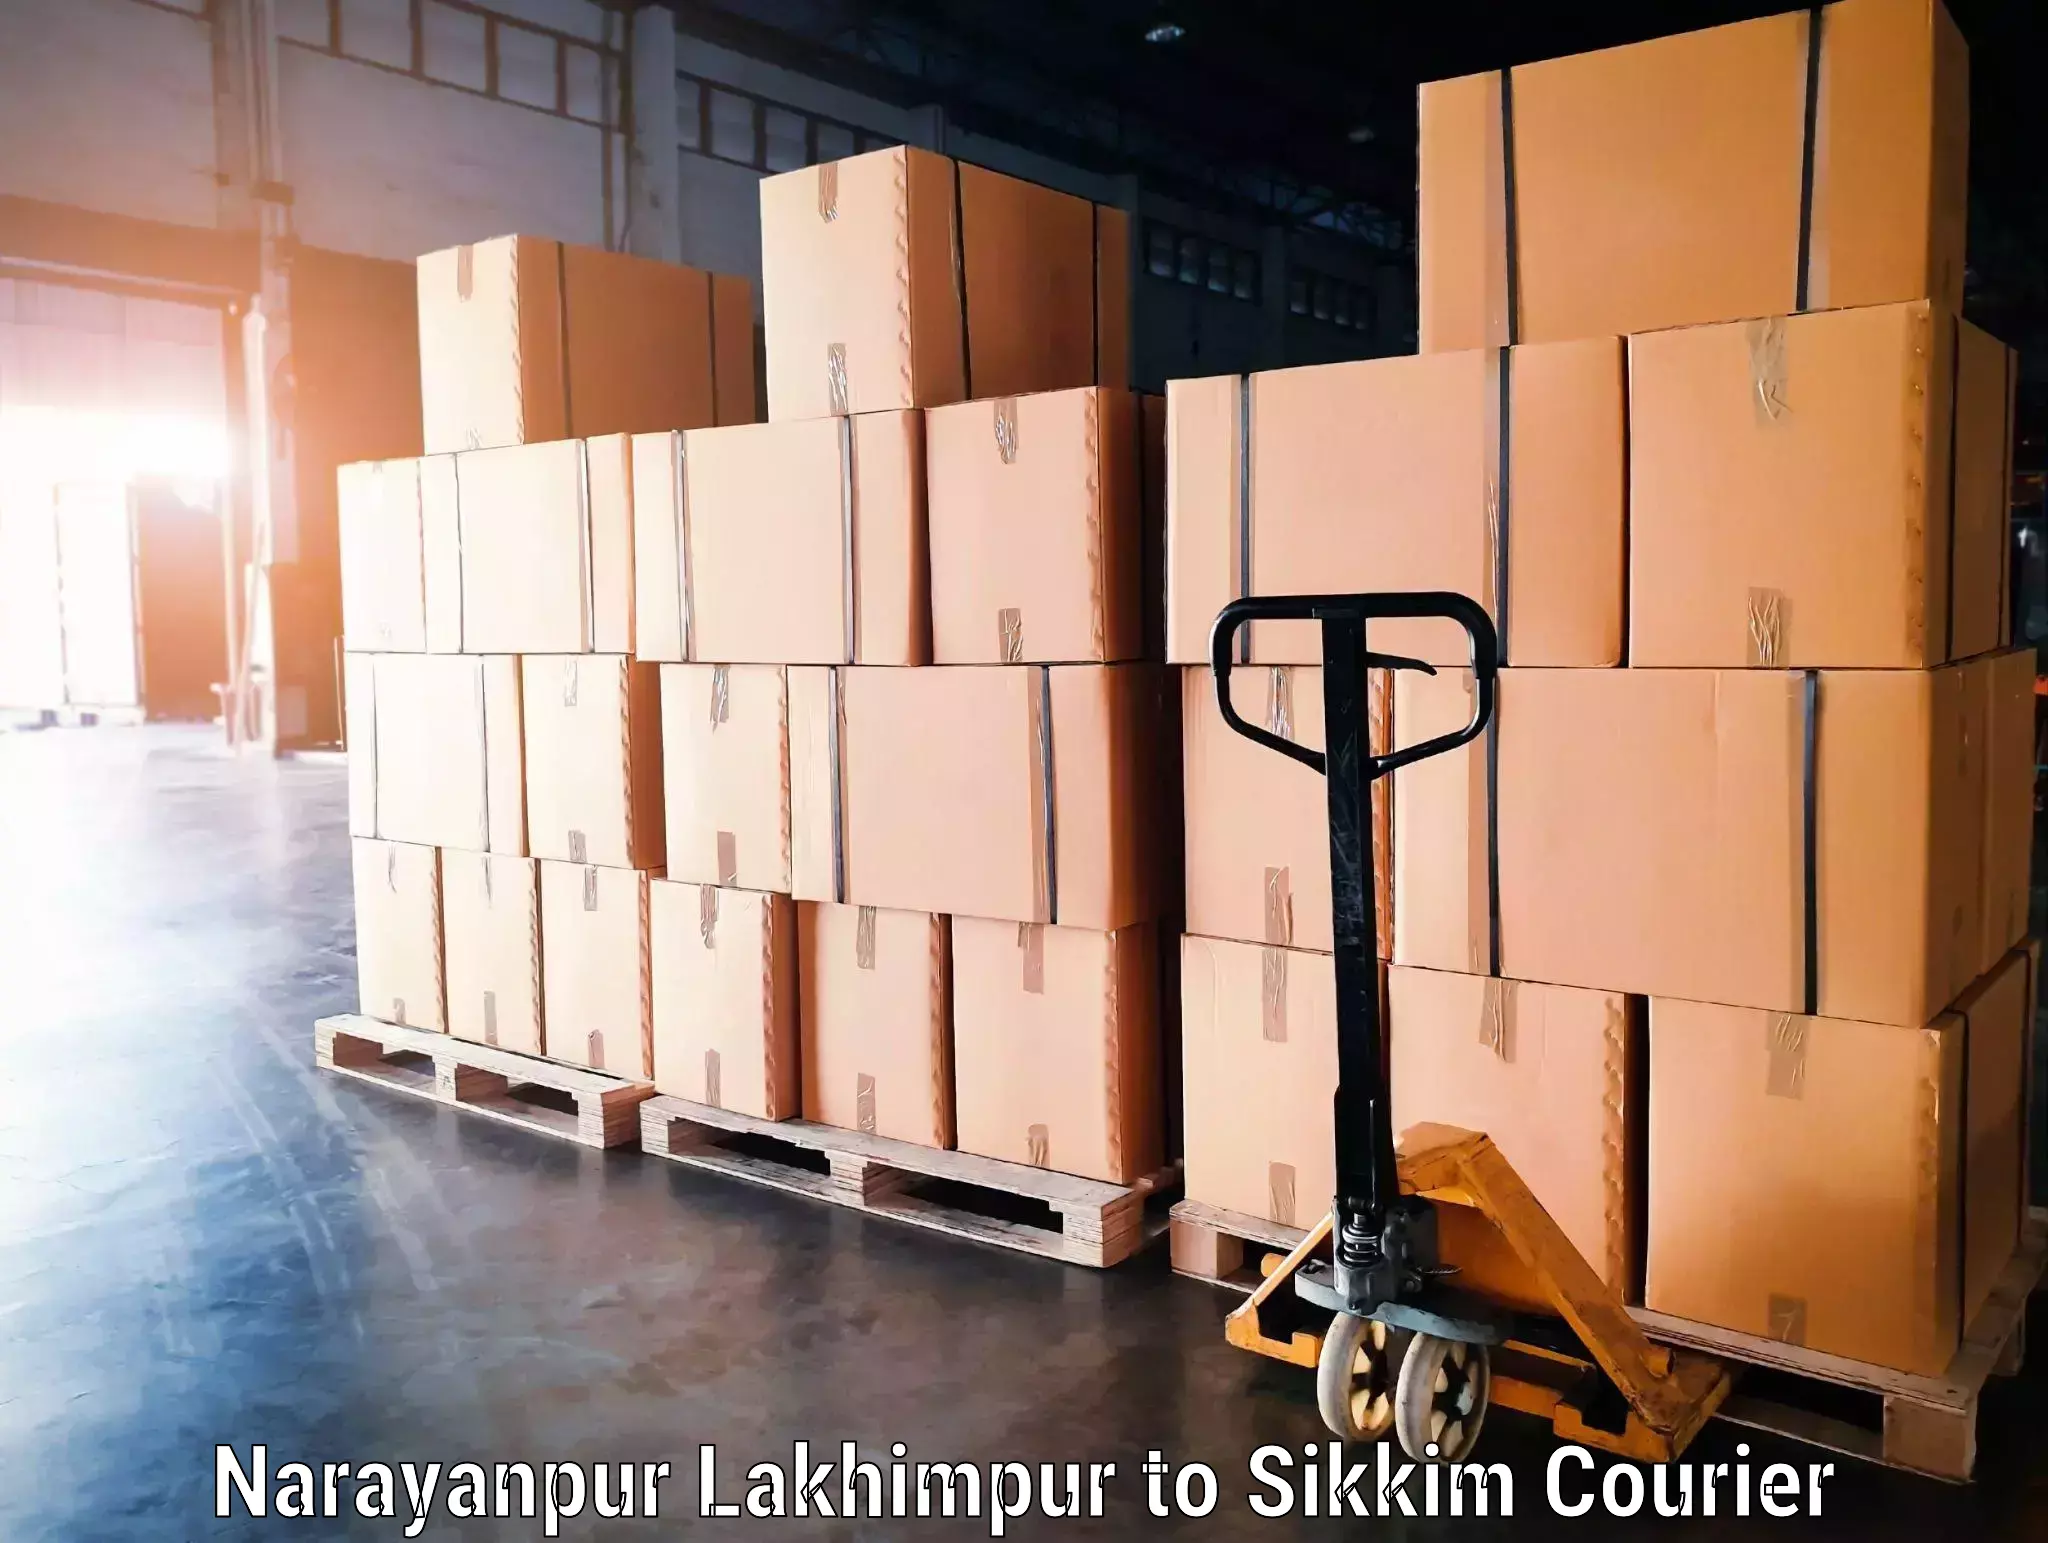 Baggage transport network Narayanpur Lakhimpur to Geyzing